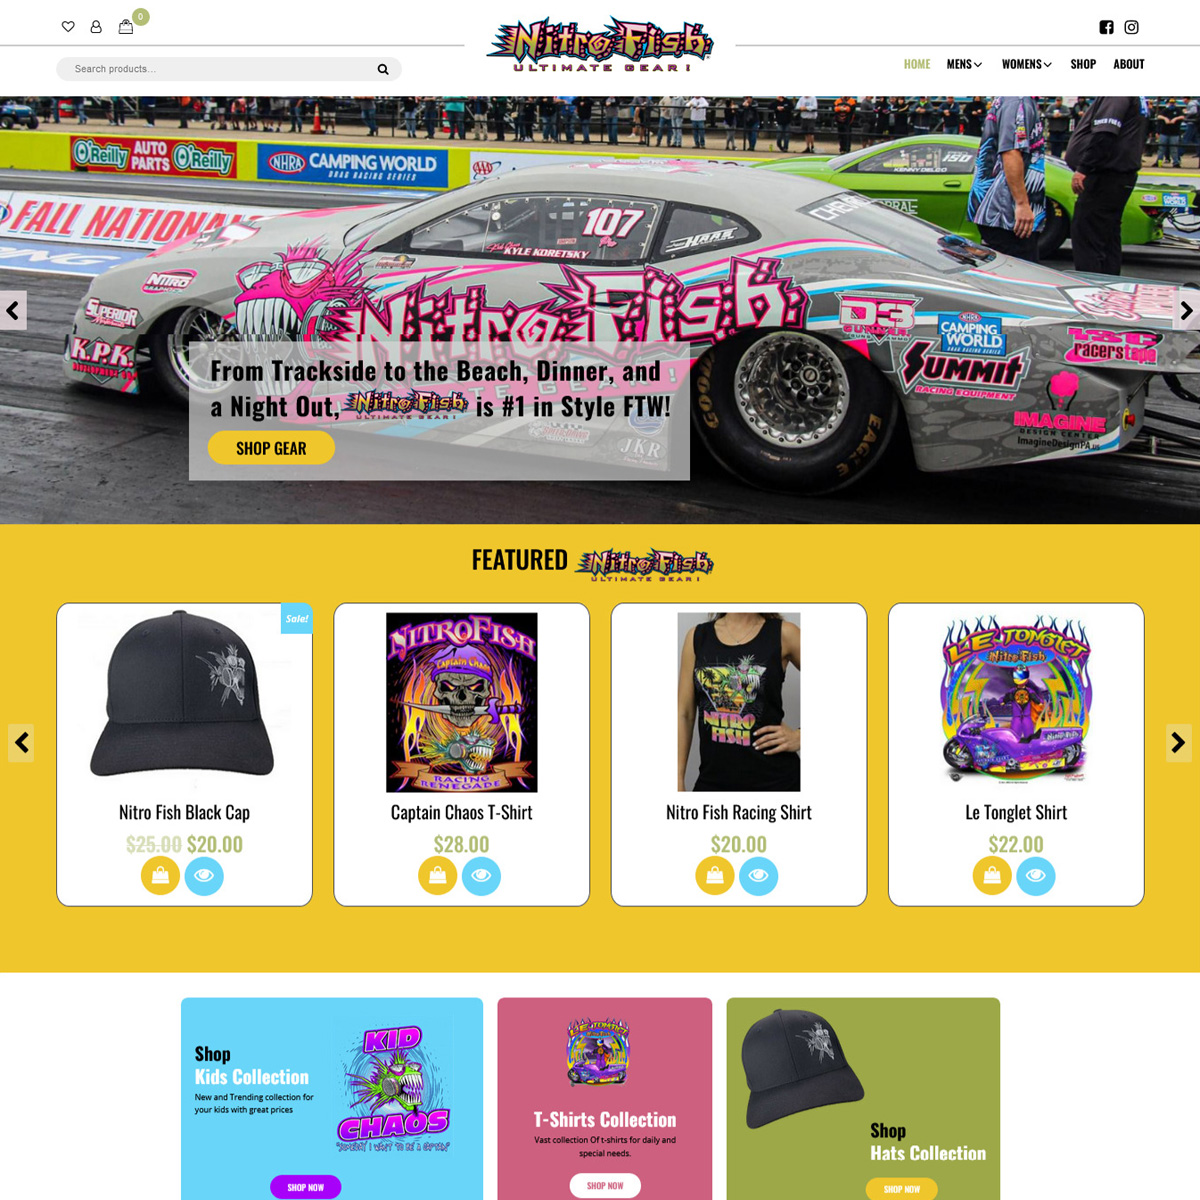 Nitro Fish Ultimate Gear Website Design